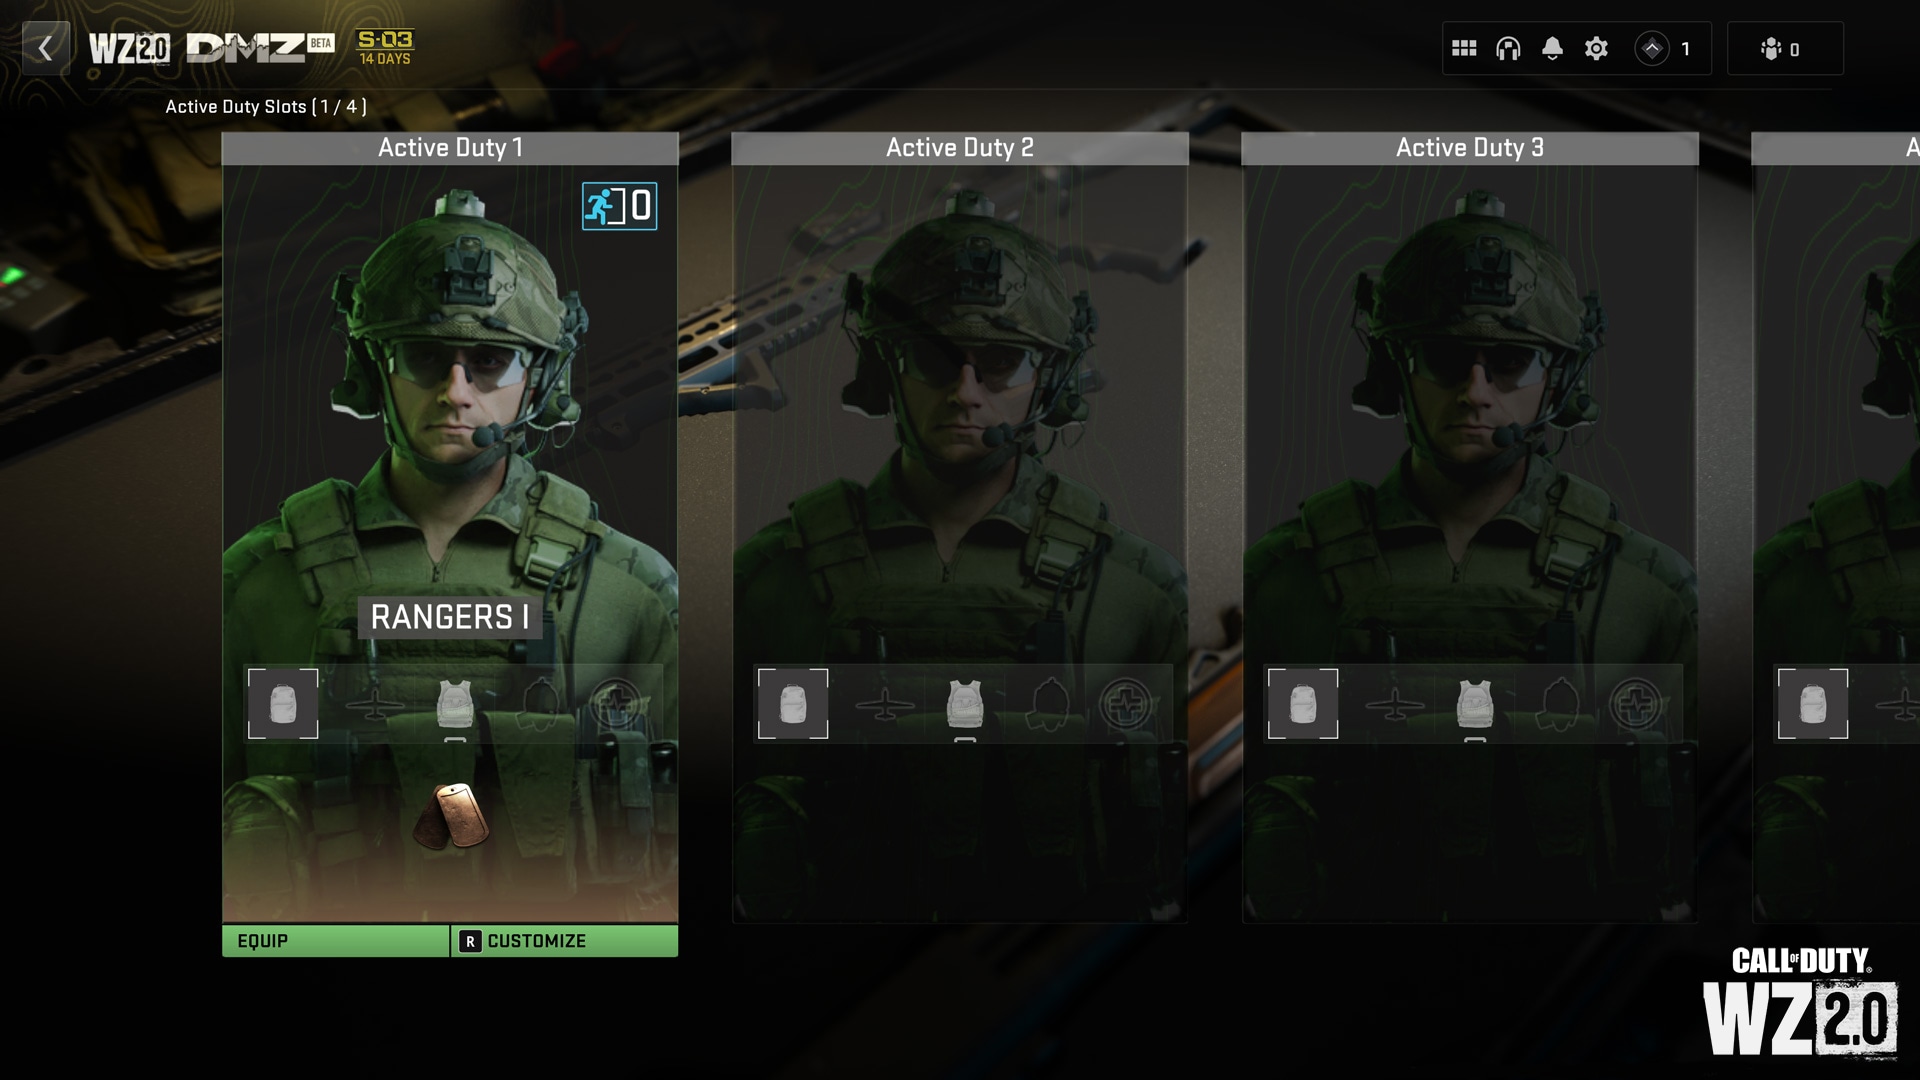 Así son las nuevas gafas de visión nocturna del Ejército que marcan a los  enemigos como en un videojuego